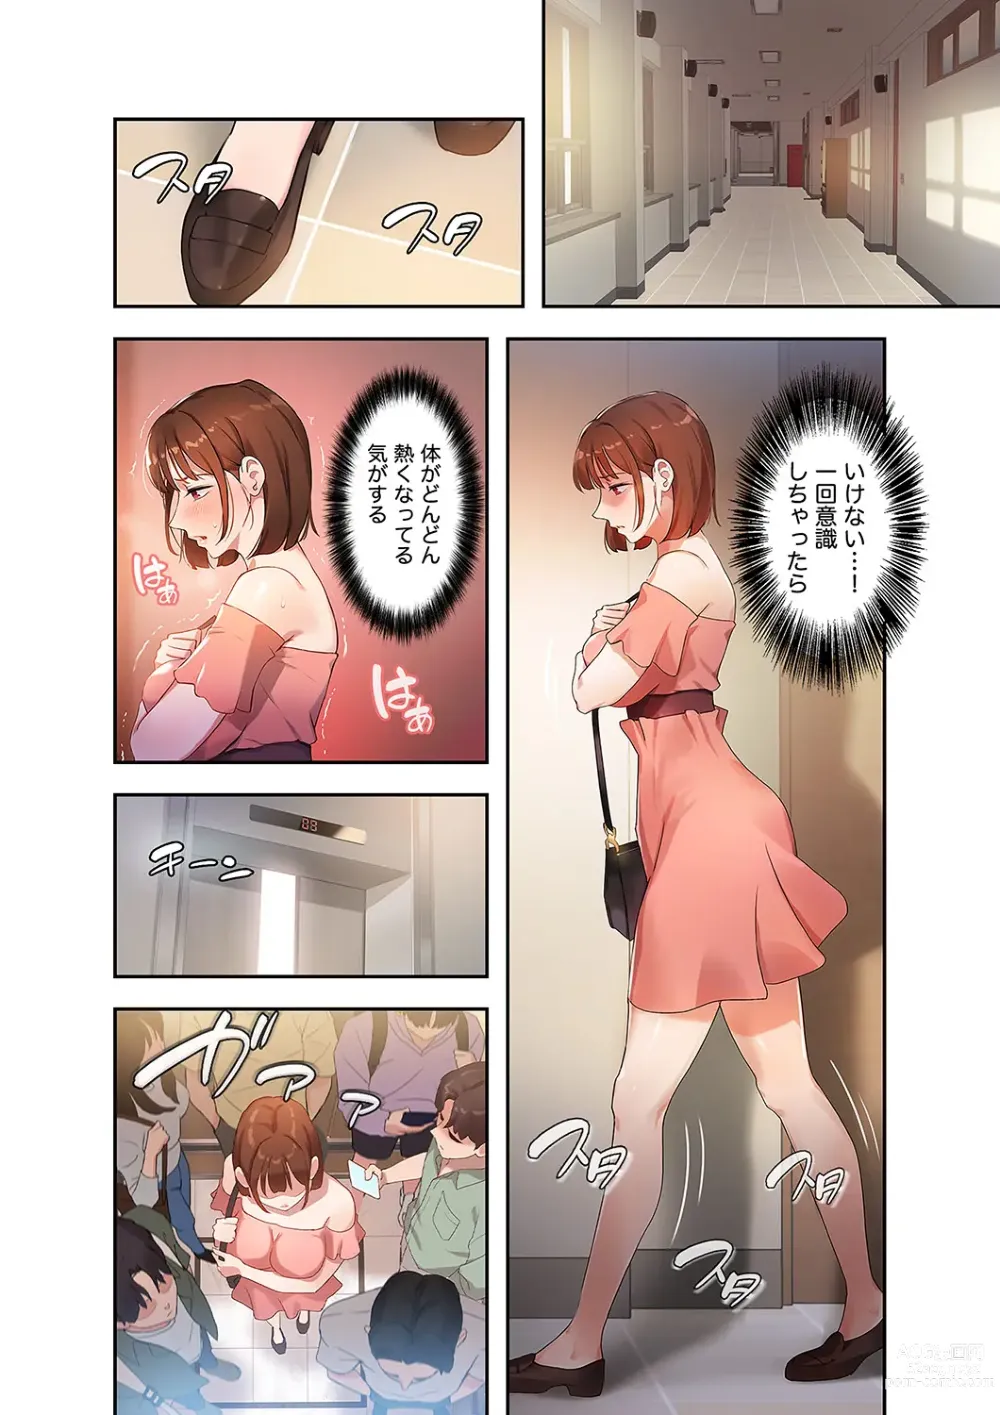 Page 138 of manga Hatachi 01